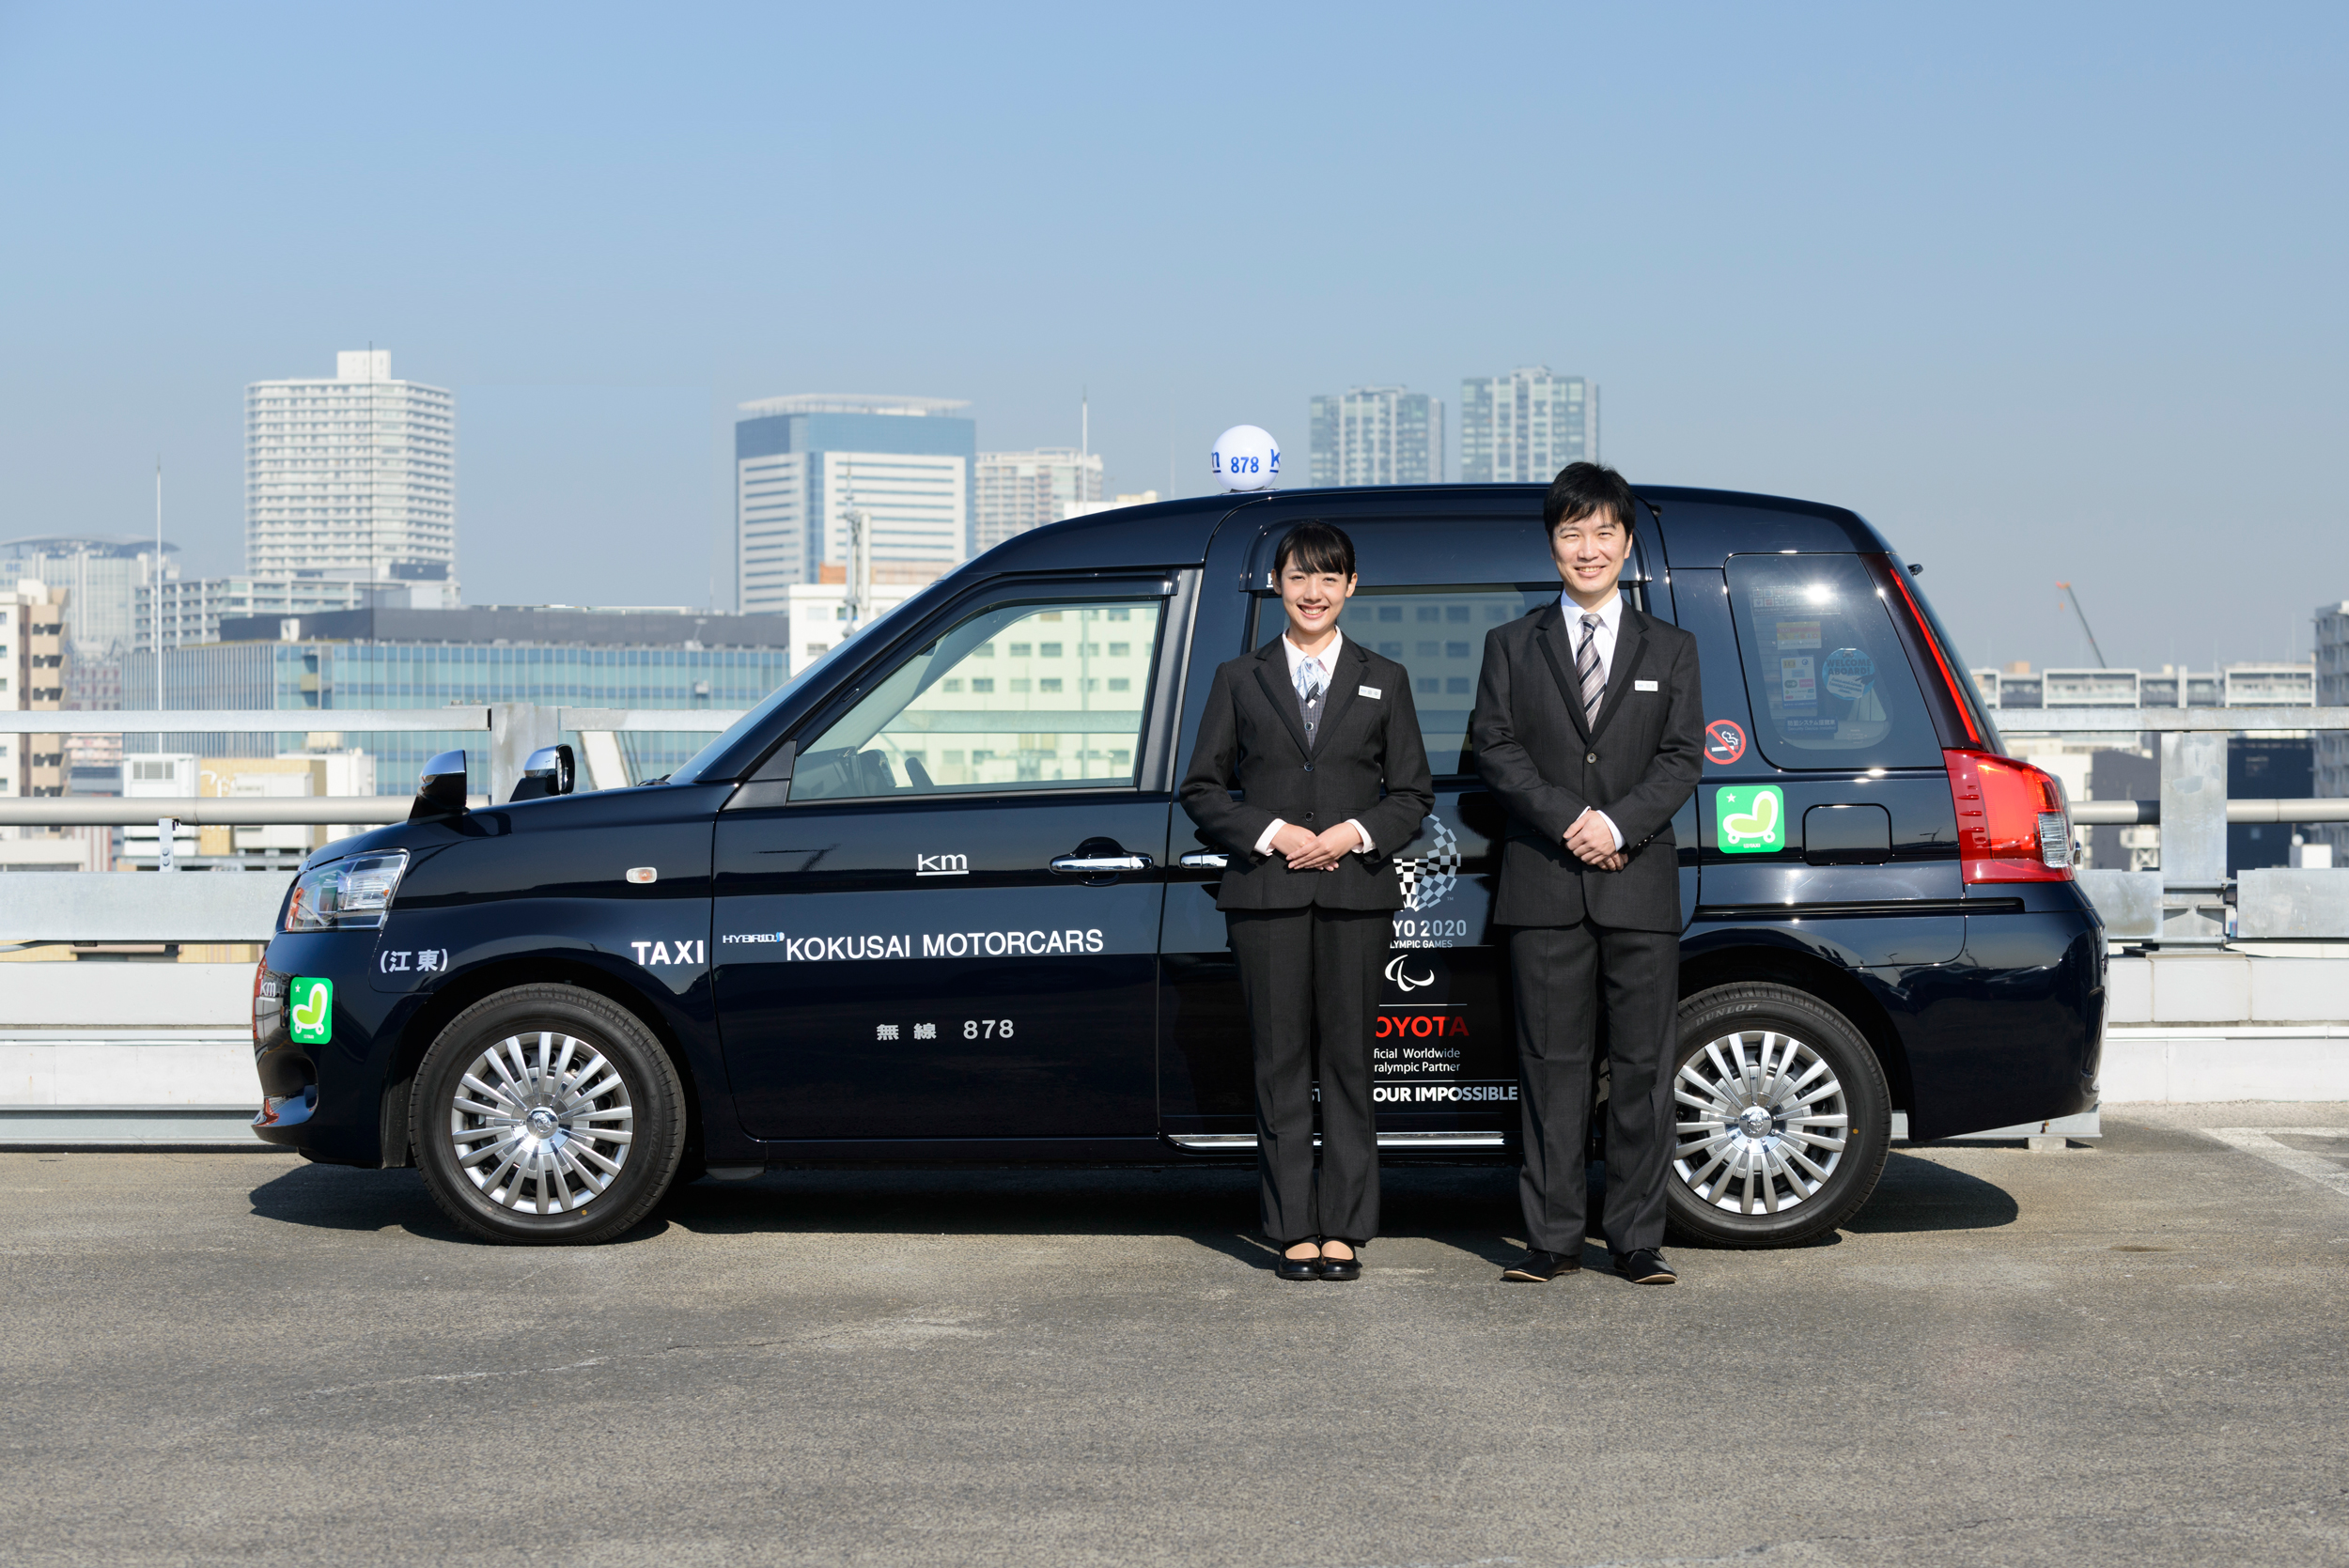 国際自動車(km)アプリ「フルクル」横浜地区での提供サービス開始へ